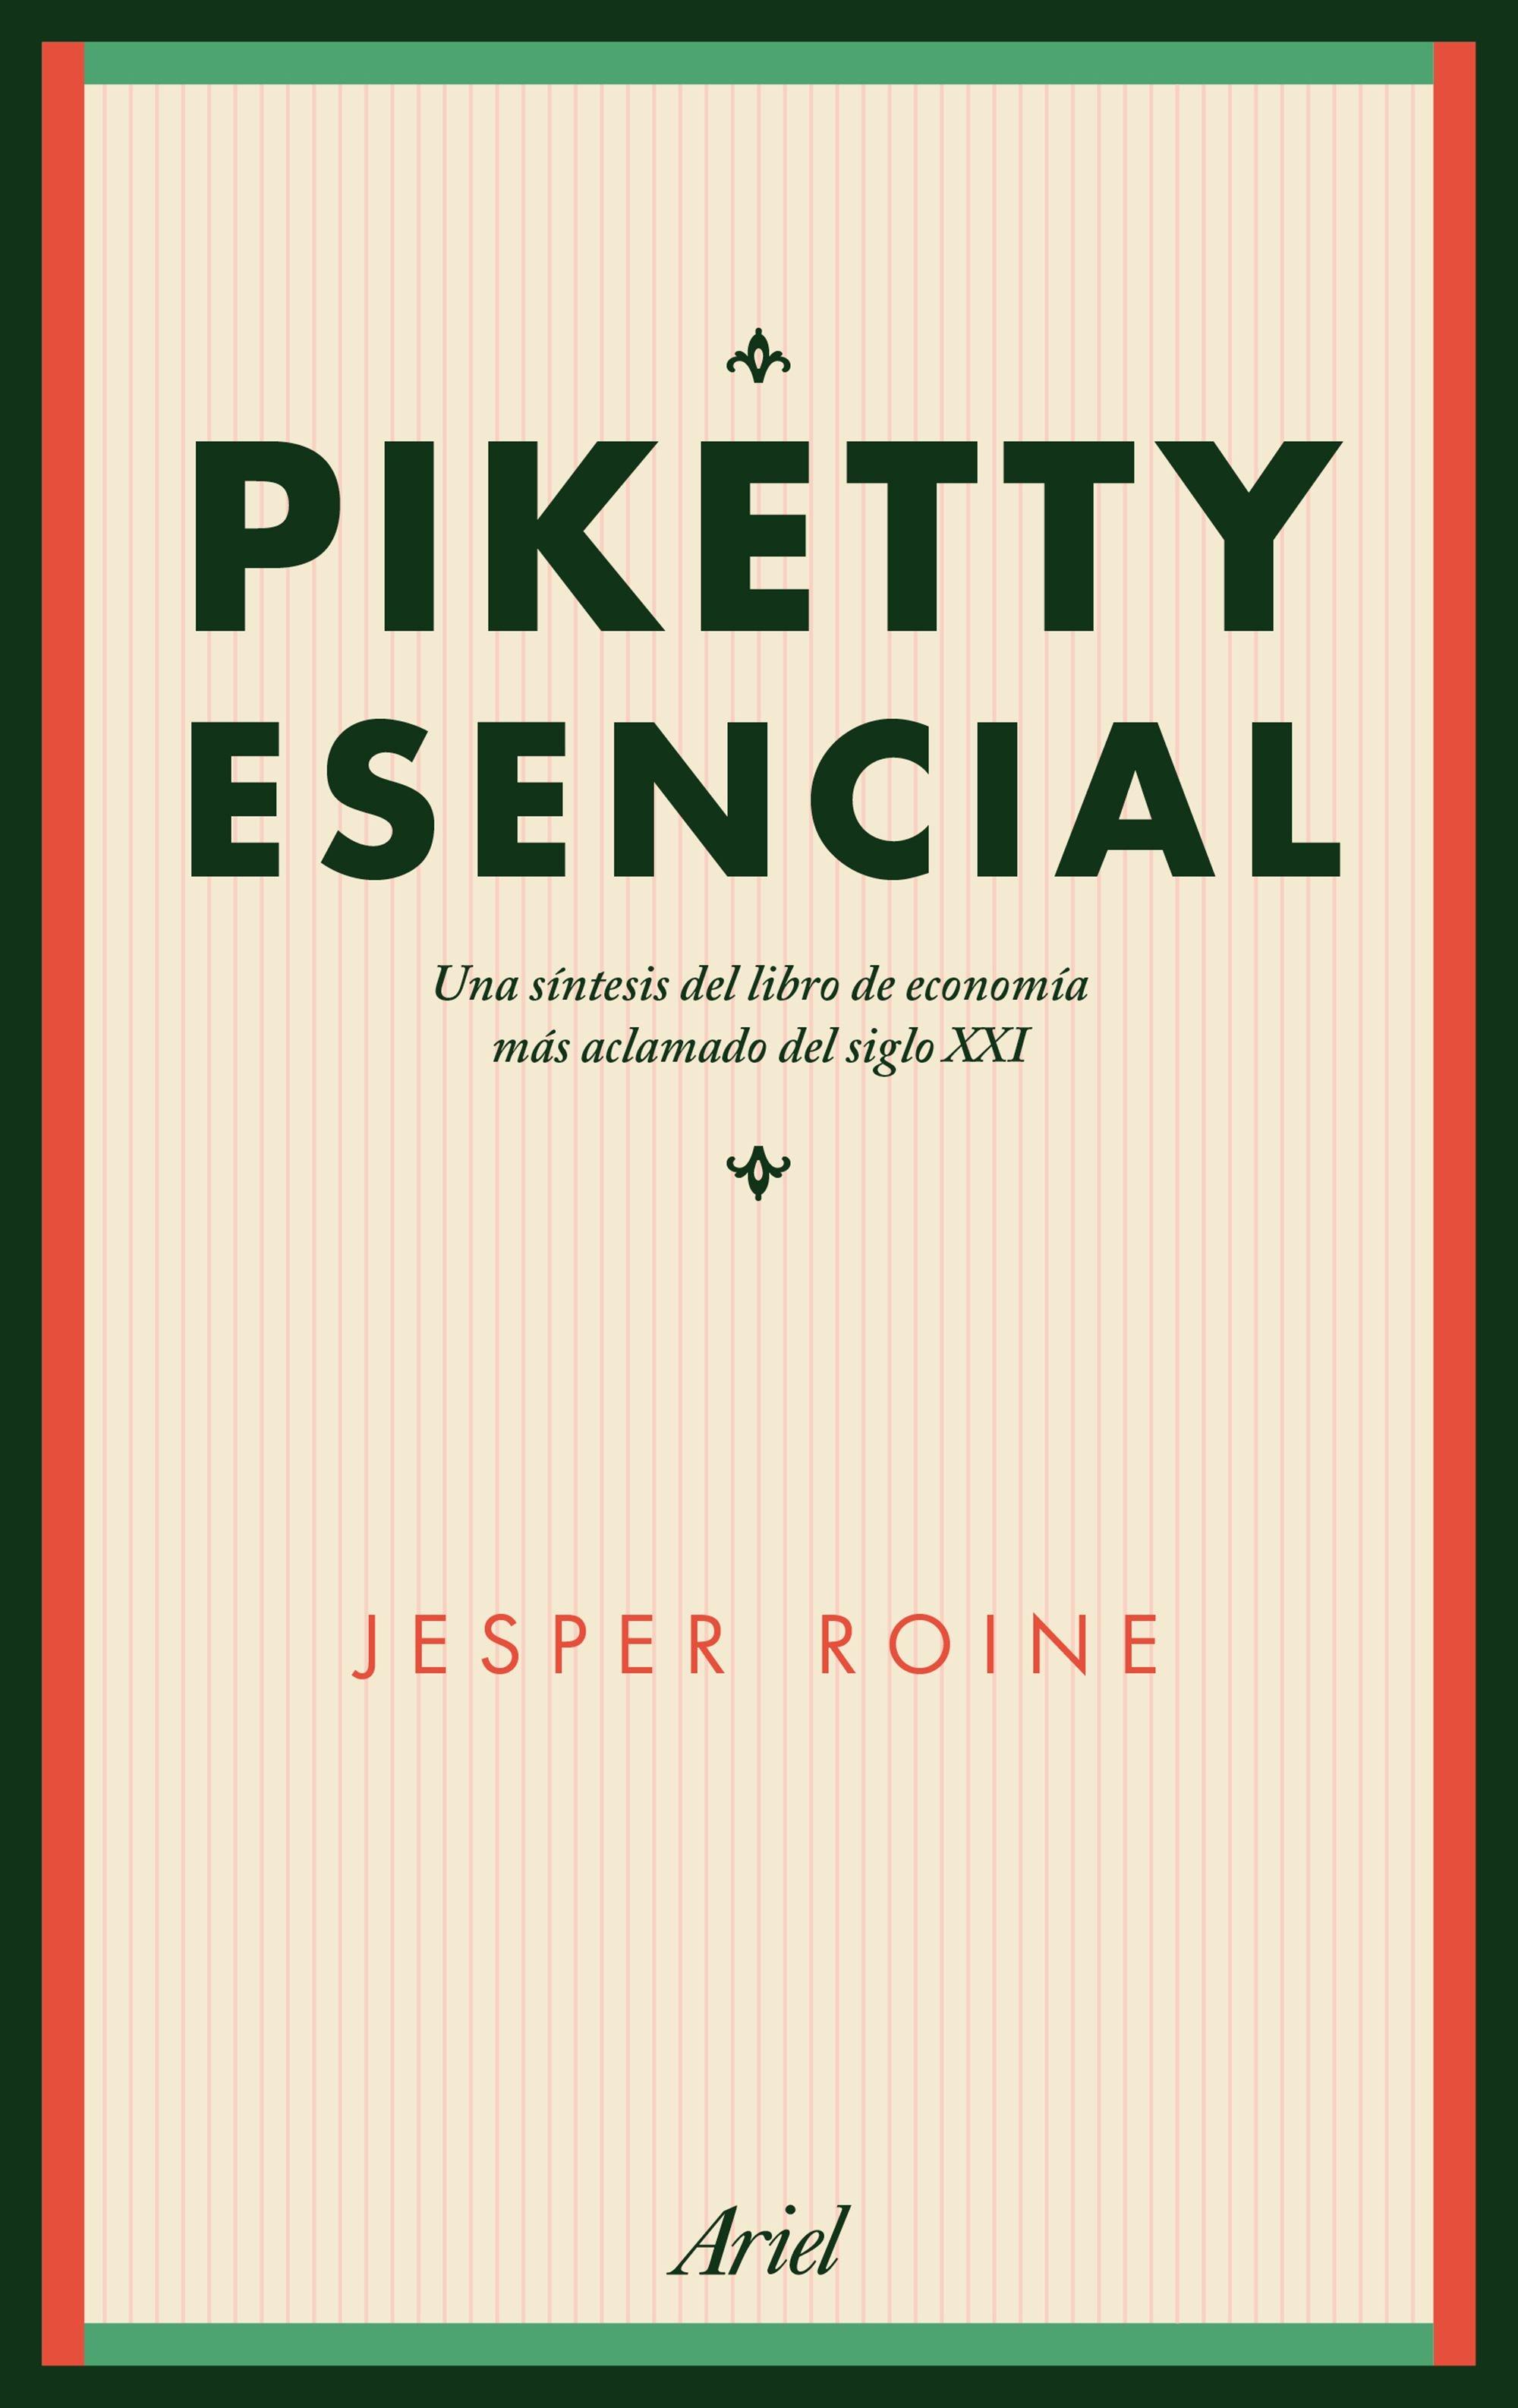 Piketty Esencial